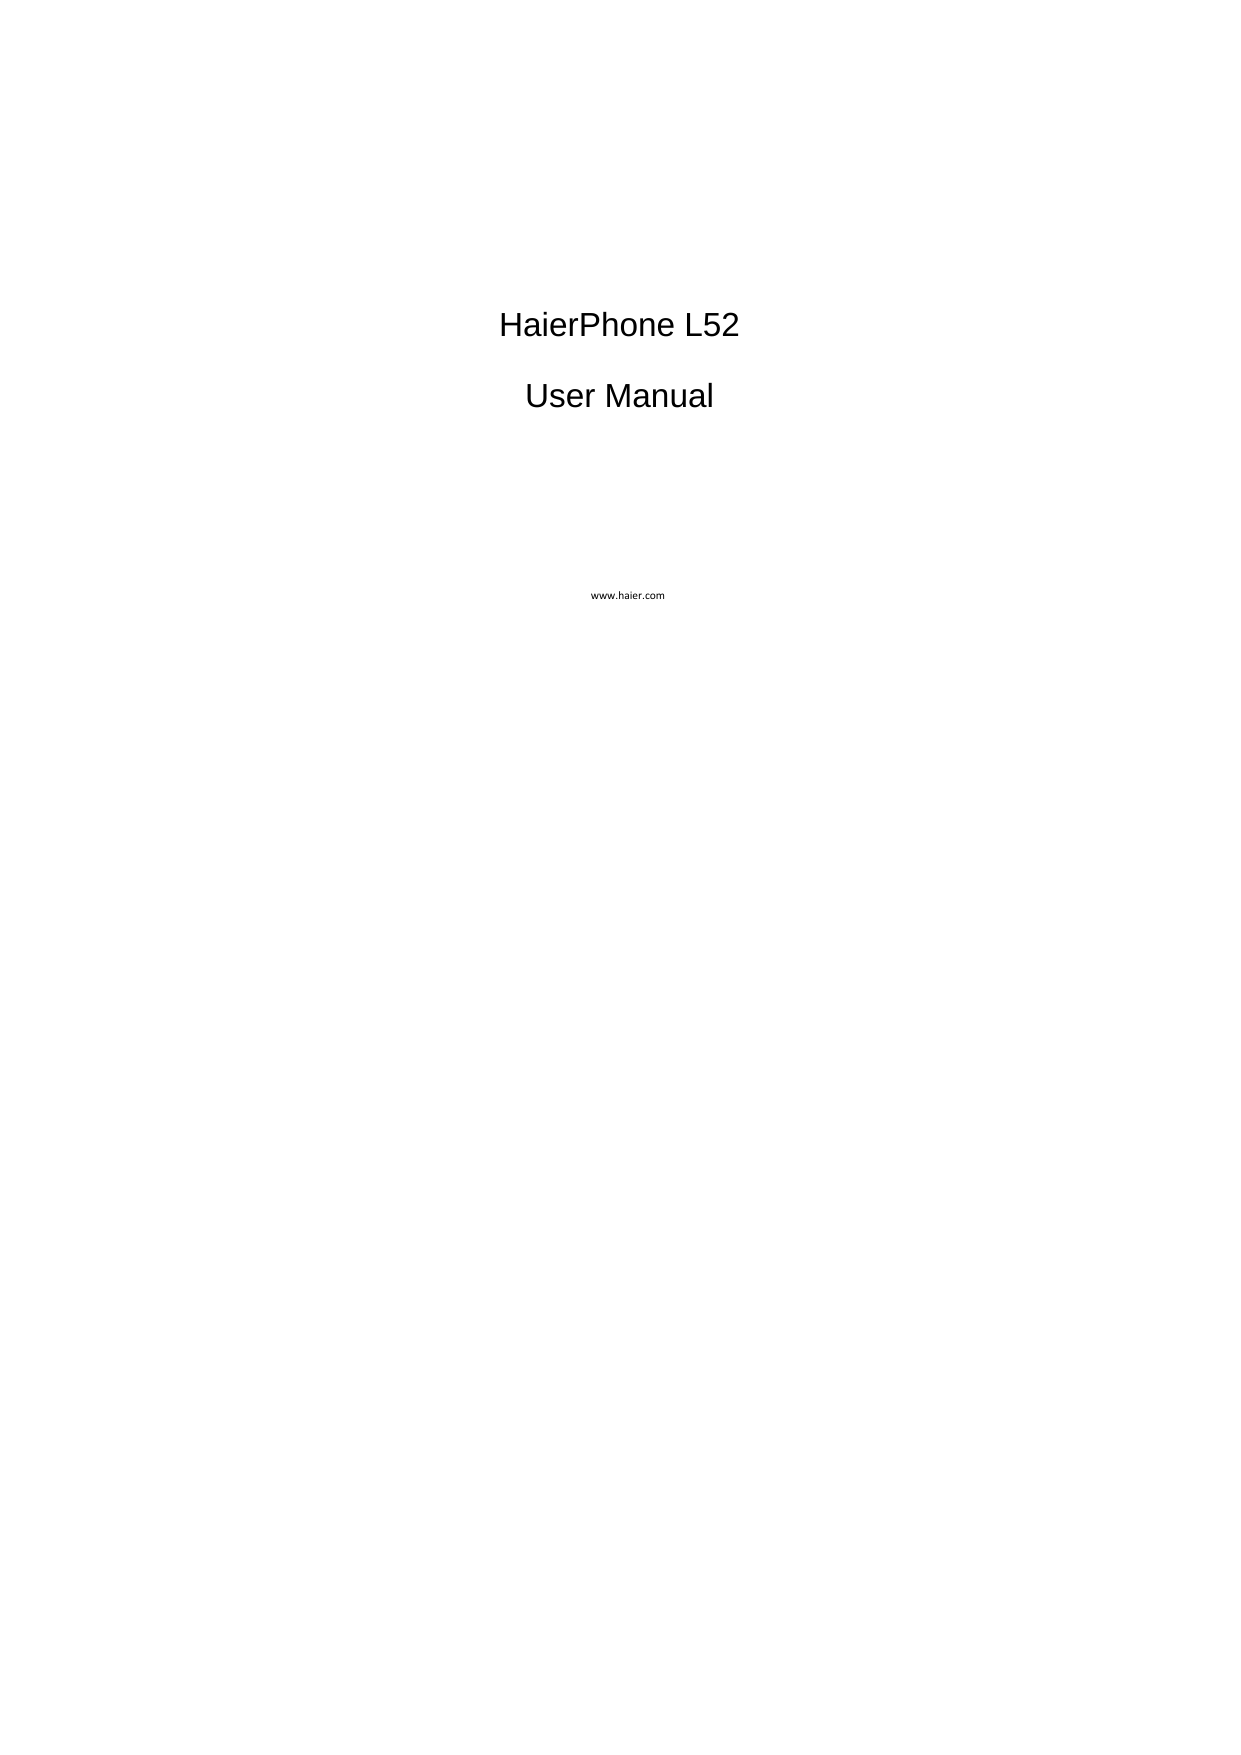    HaierPhone L52 User Manual www.haier.com